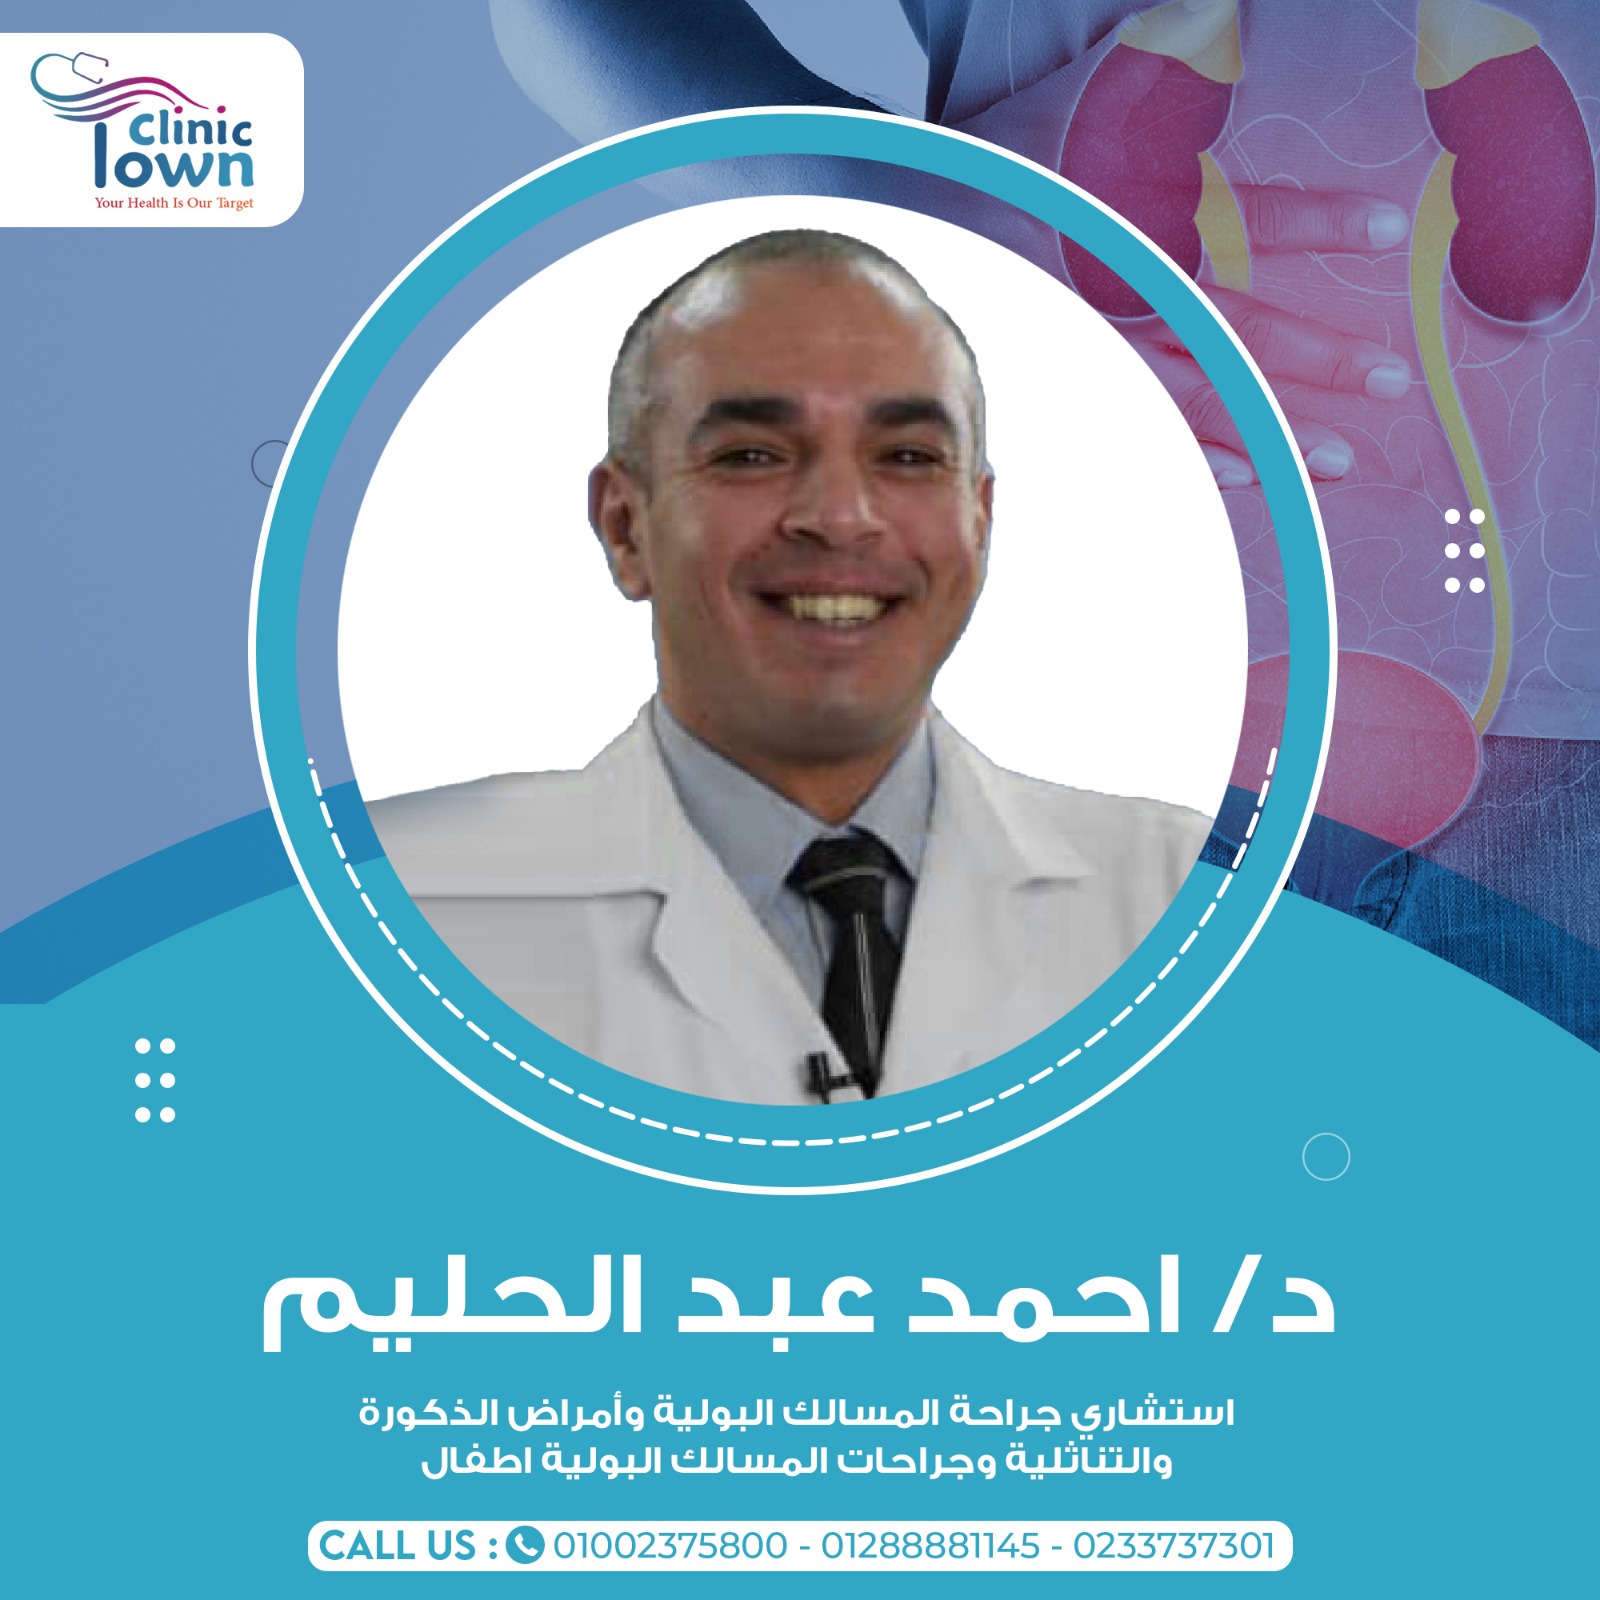 Dr. Ahmed Abdel Halim